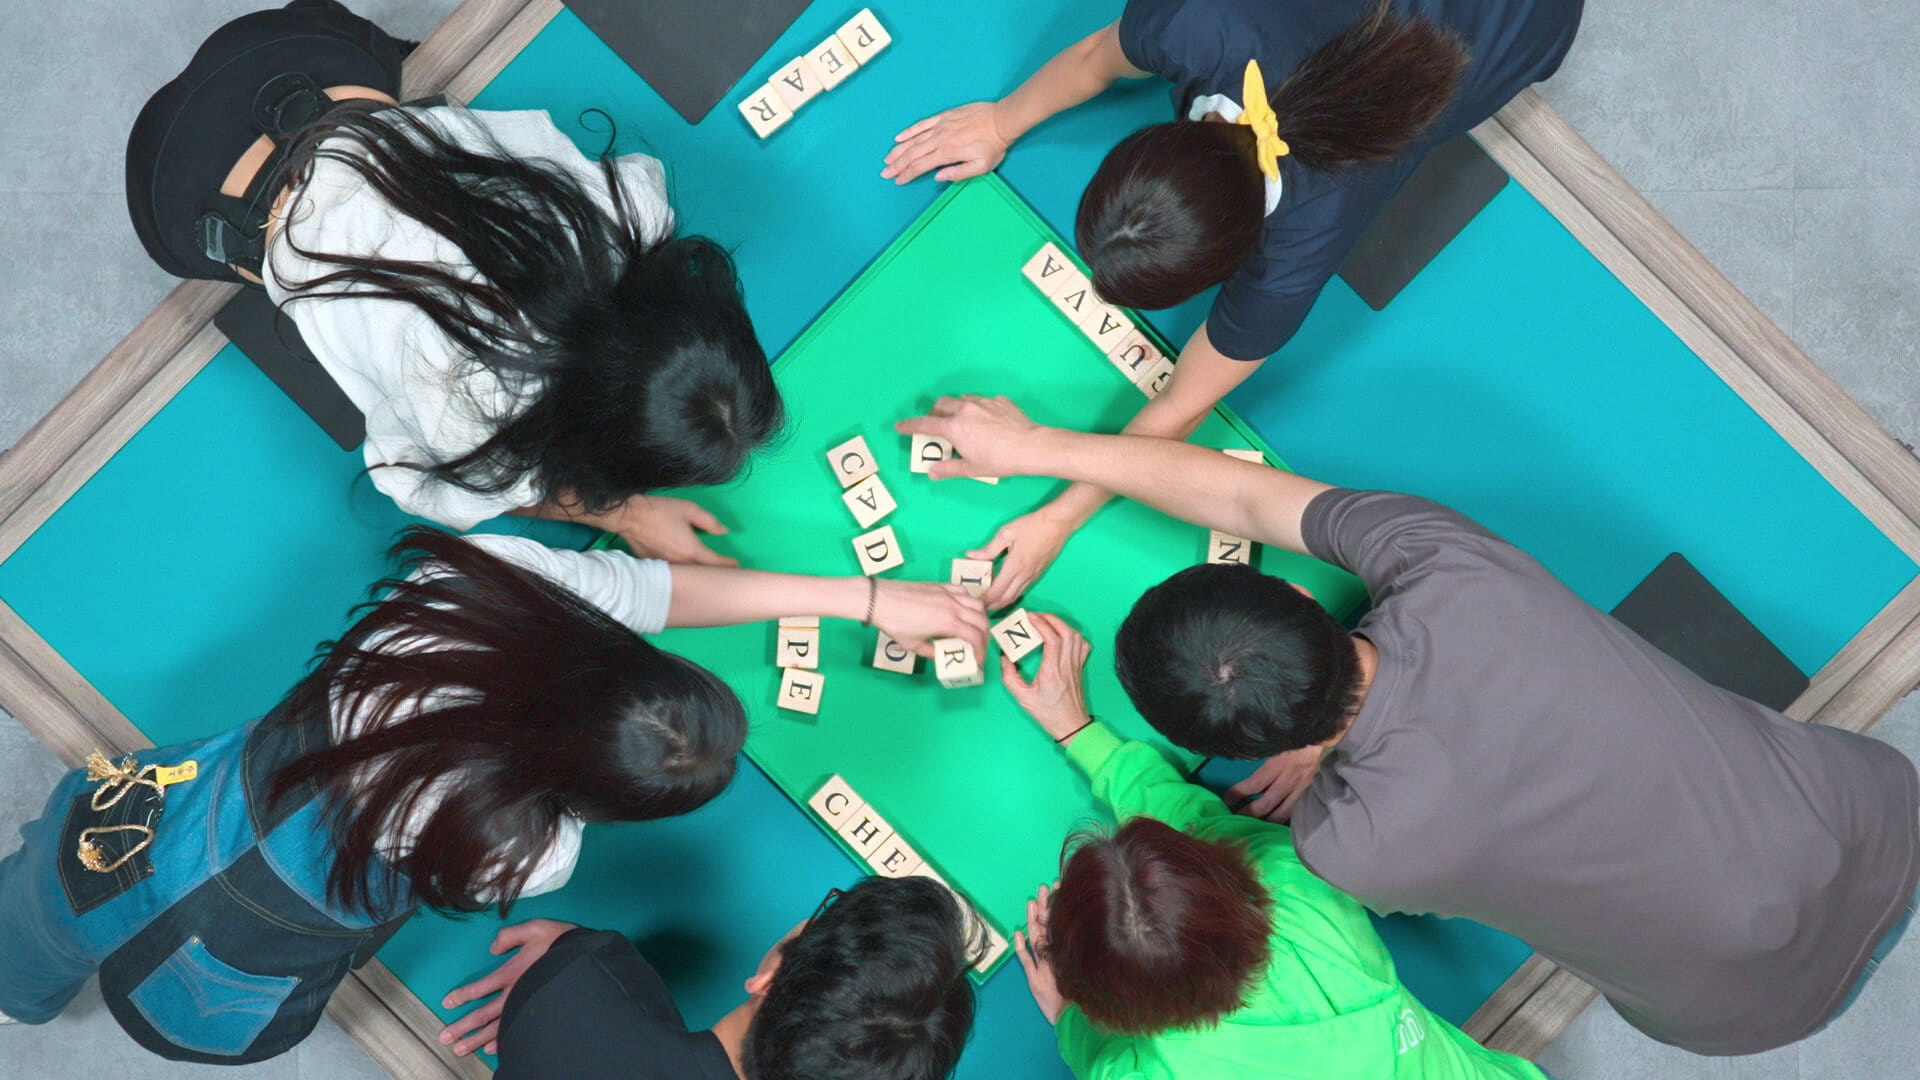 Cena de O Jogo do Diabo. De cima, seis pessoas asiáticas são vistas debruçadas sobre uma grande mesa verde; todos vestem roupas casuais. Estão mexendo em blocos de madeira com diferentes letras.